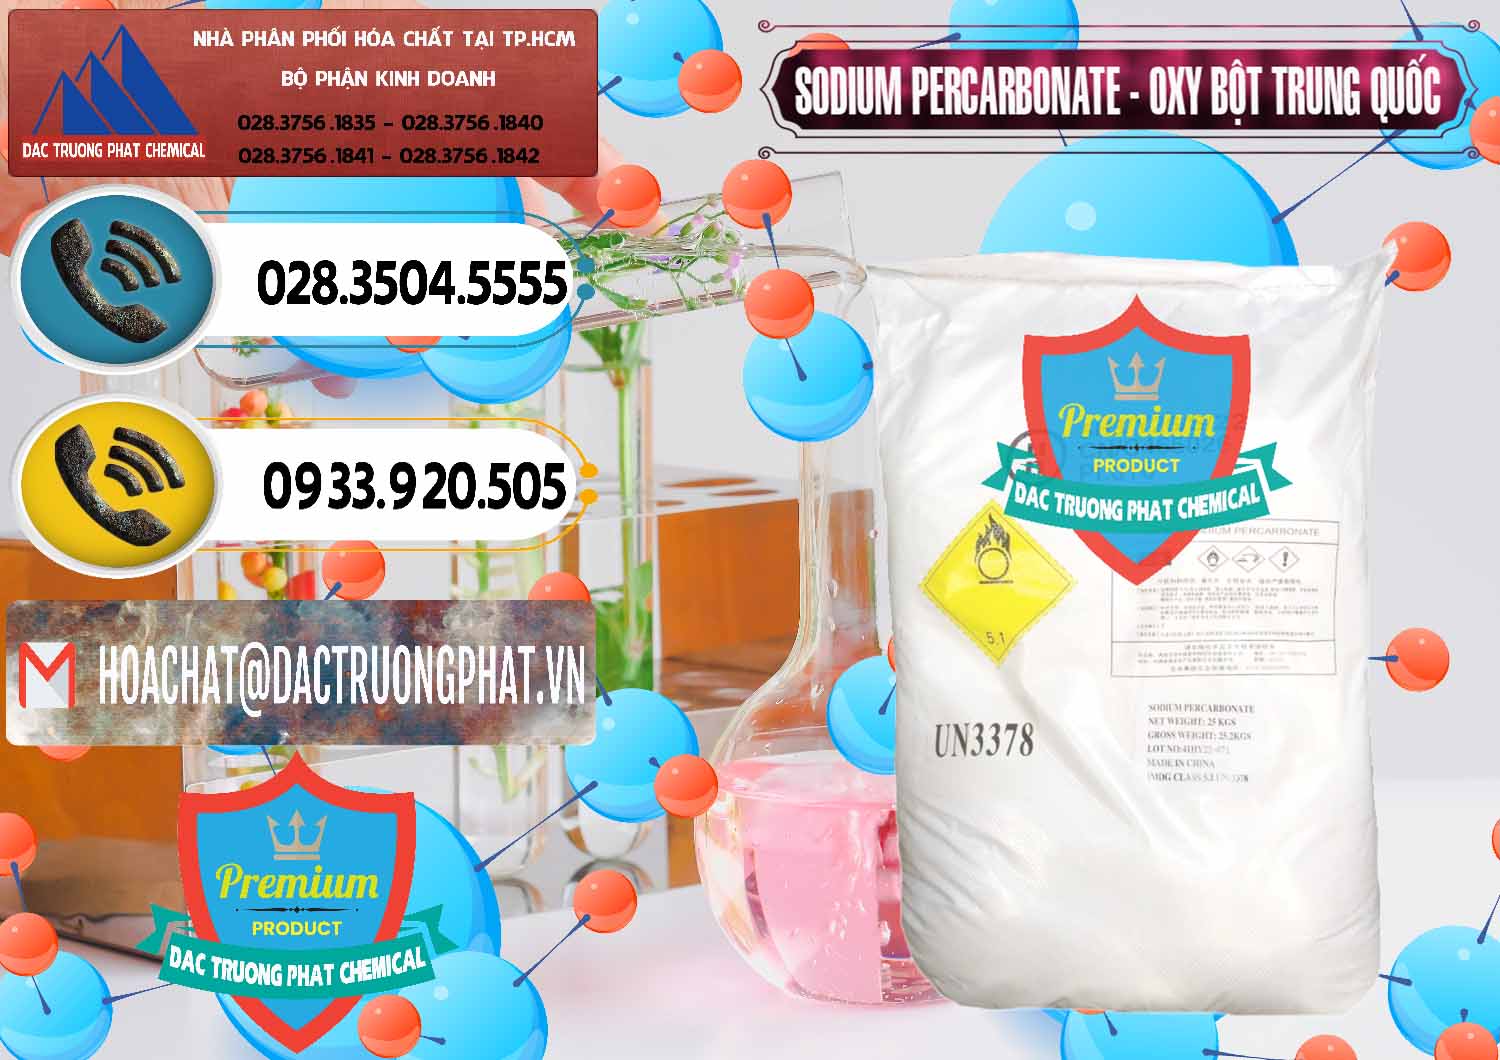 Cty kinh doanh ( bán ) Sodium Percarbonate Dạng Bột Trung Quốc China - 0390 - Công ty chuyên phân phối ( nhập khẩu ) hóa chất tại TP.HCM - hoachatdetnhuom.vn